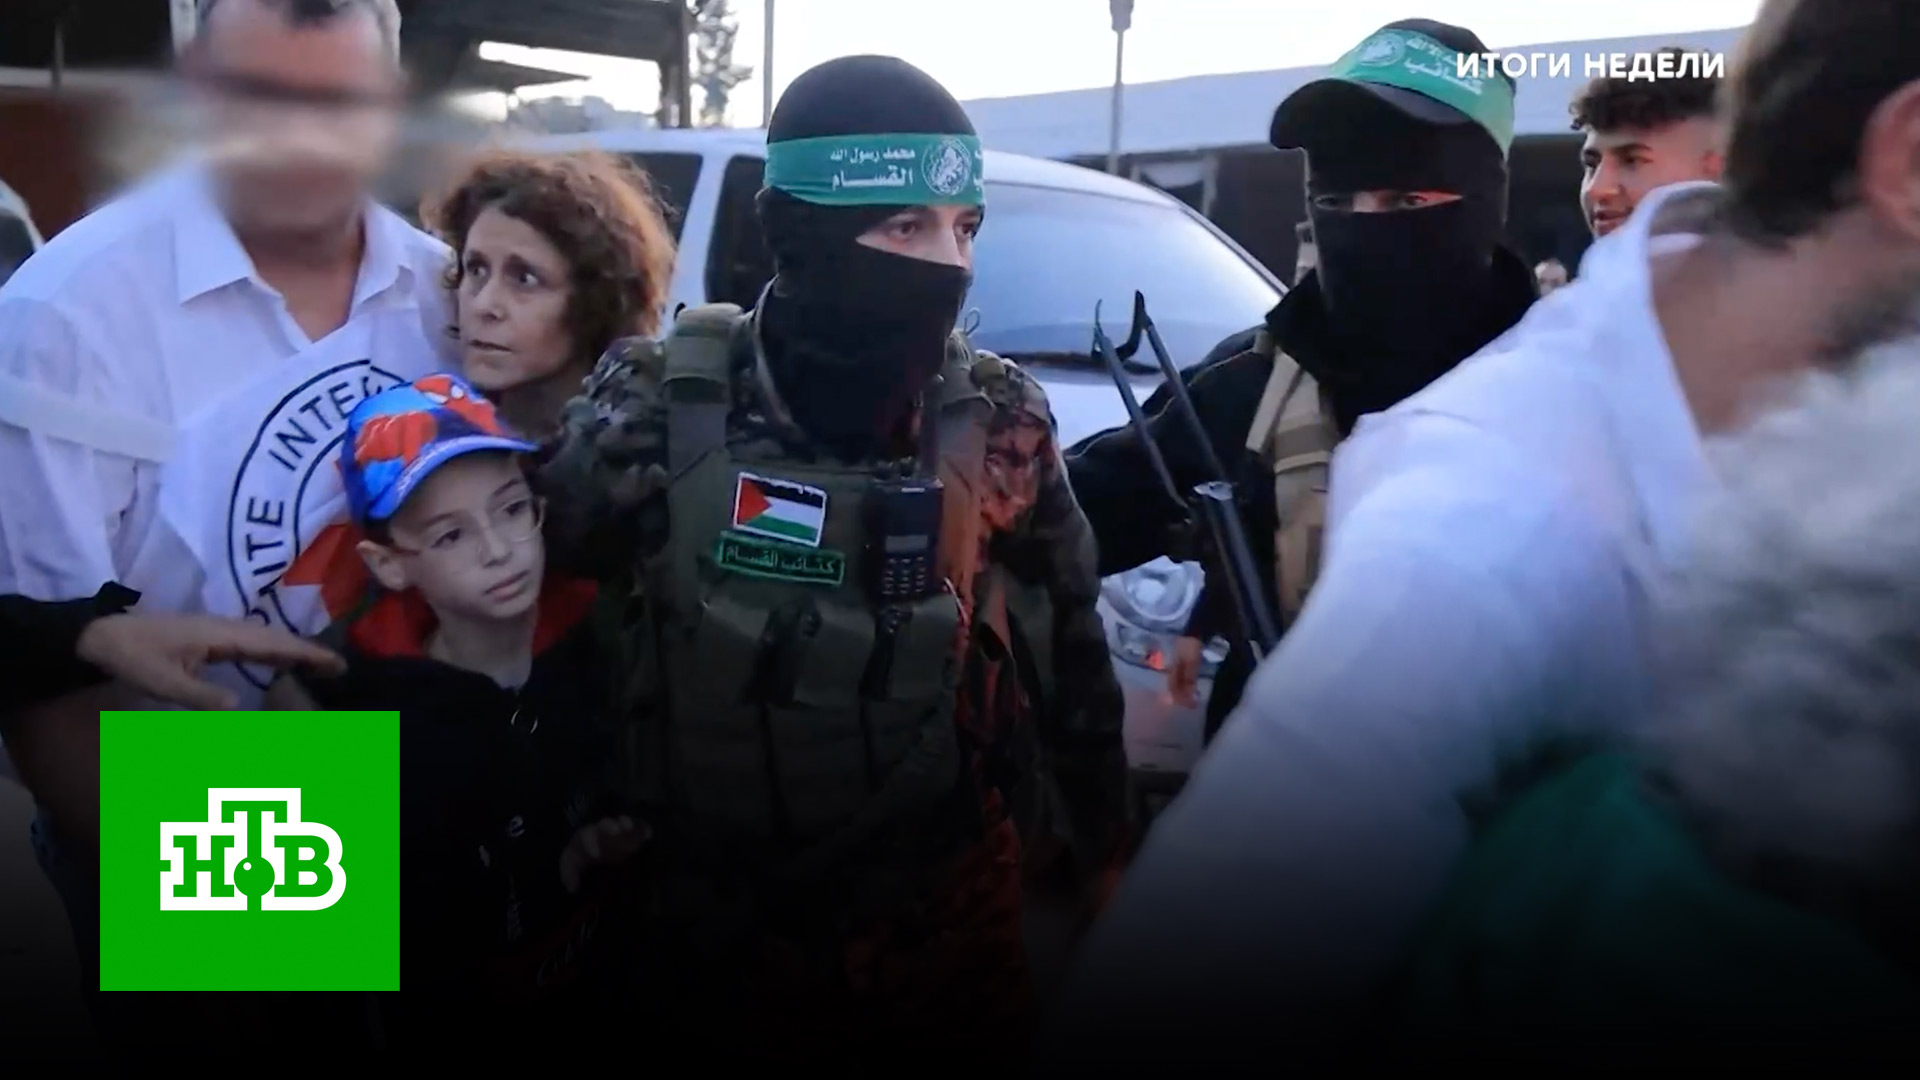 «ХАМАС — это идея»: эксперты не видят военного пути решения проблем Израиля | «Итоги недели»